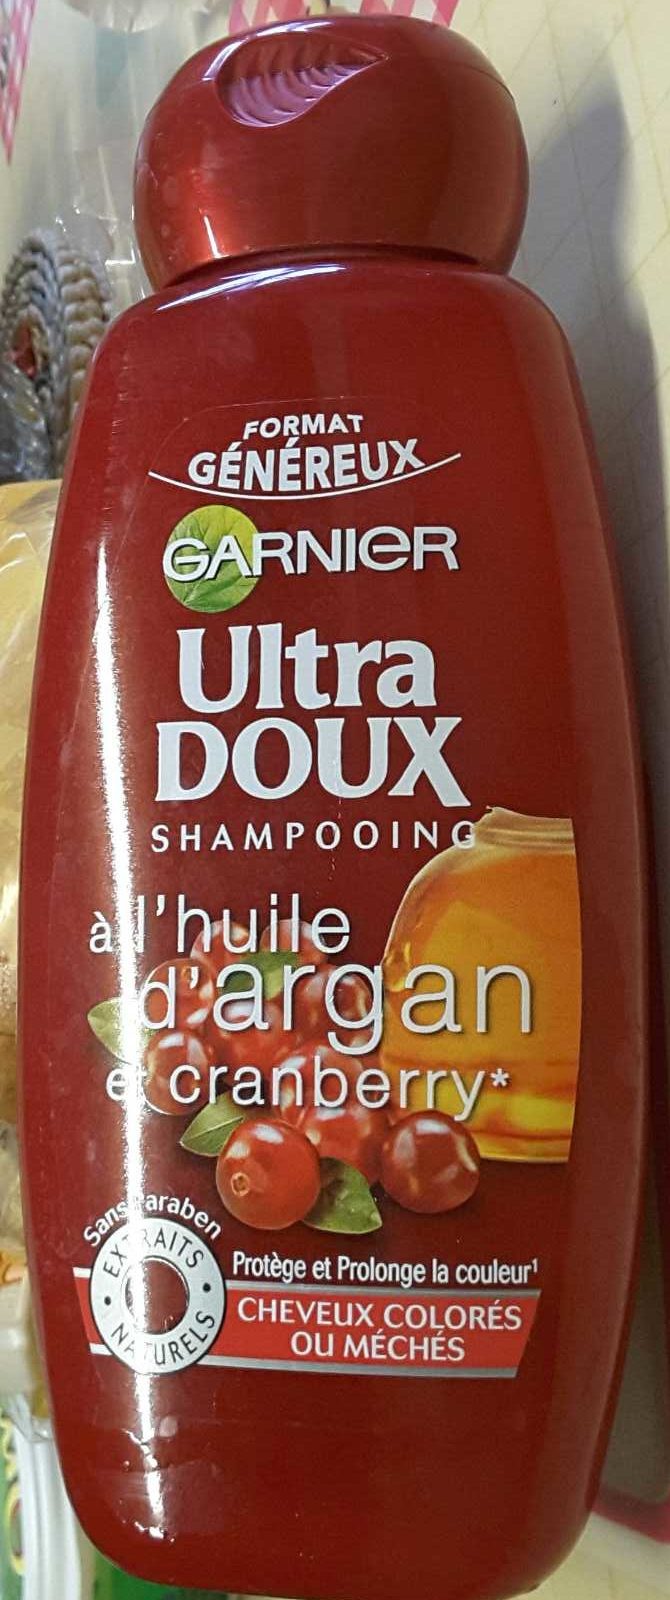 Ultra Doux Shampooing à l'huile d'argan et cranberry (format généreux) - Product - fr